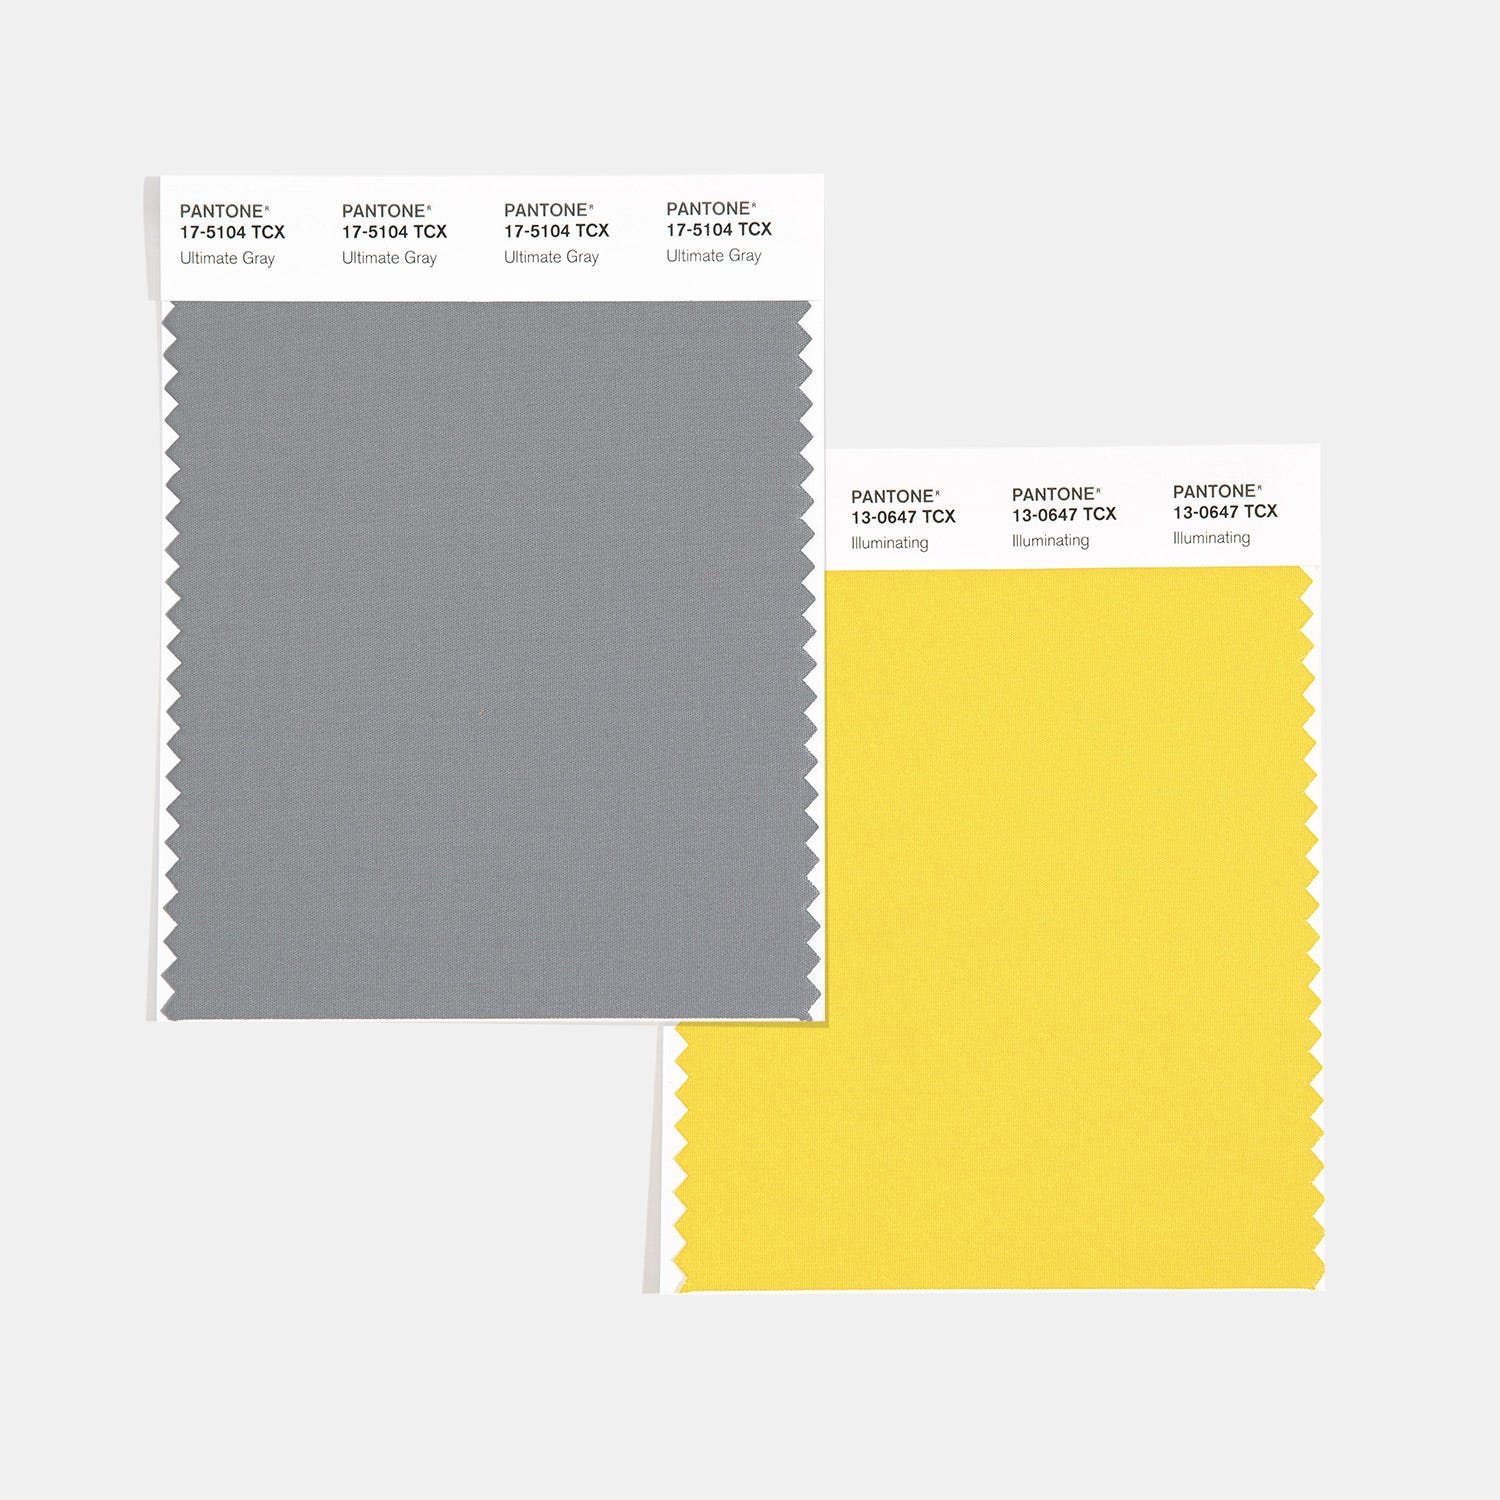 El gris Ultimate 17-5104 y el amarillo Illuminating 13-0647, los colores del 2020 | Foto: Pantone